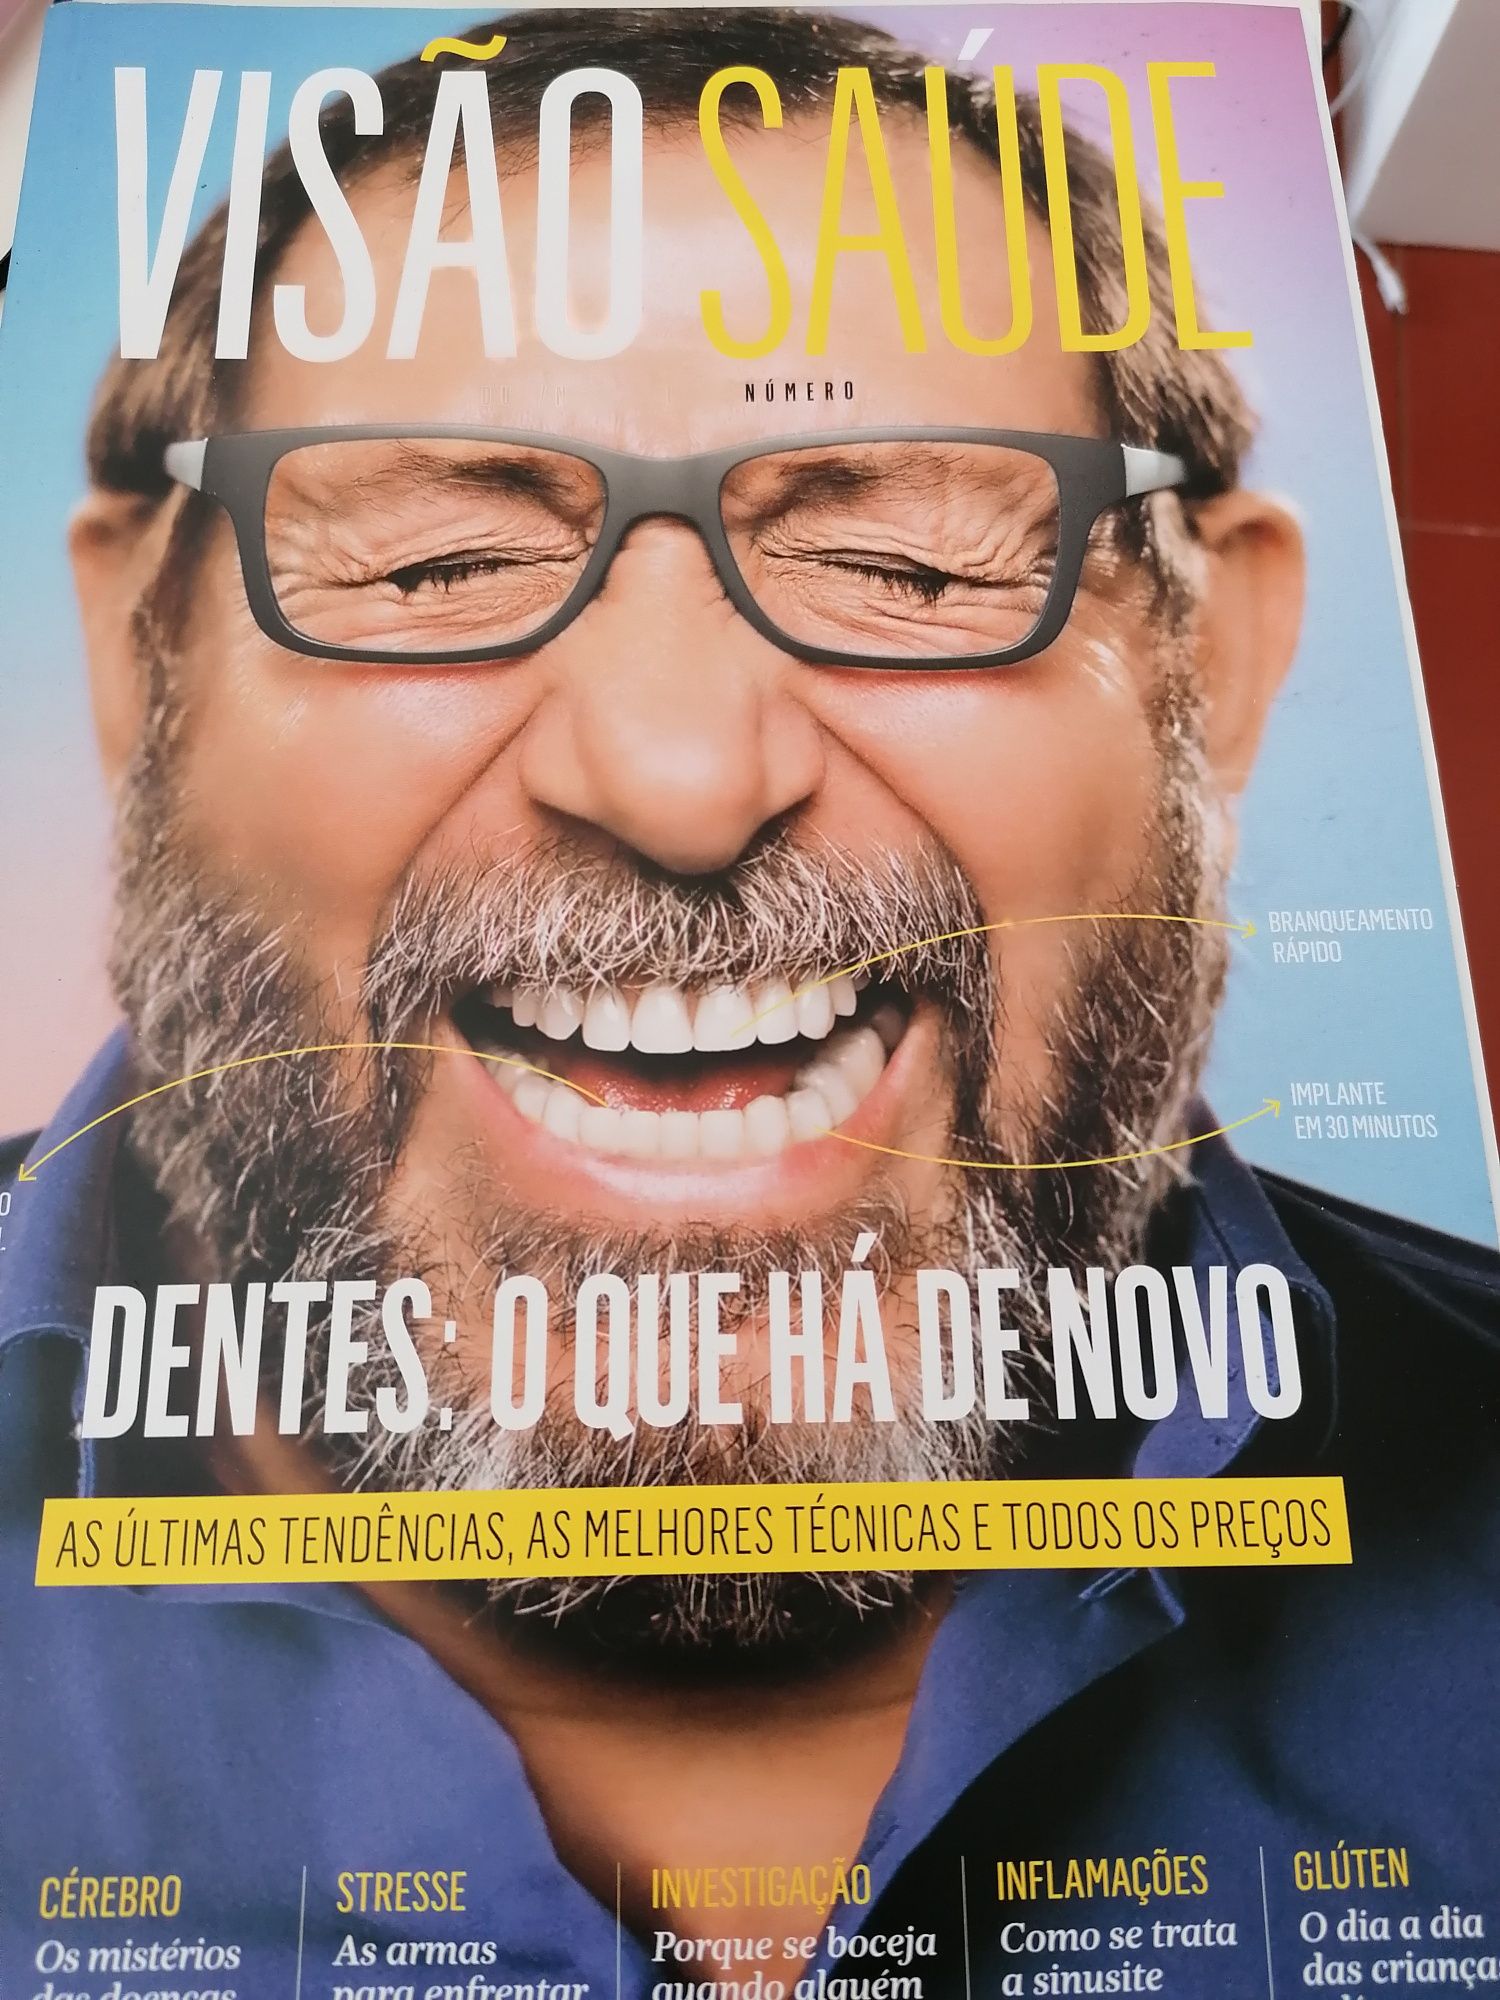 Revistas Visão Saúde